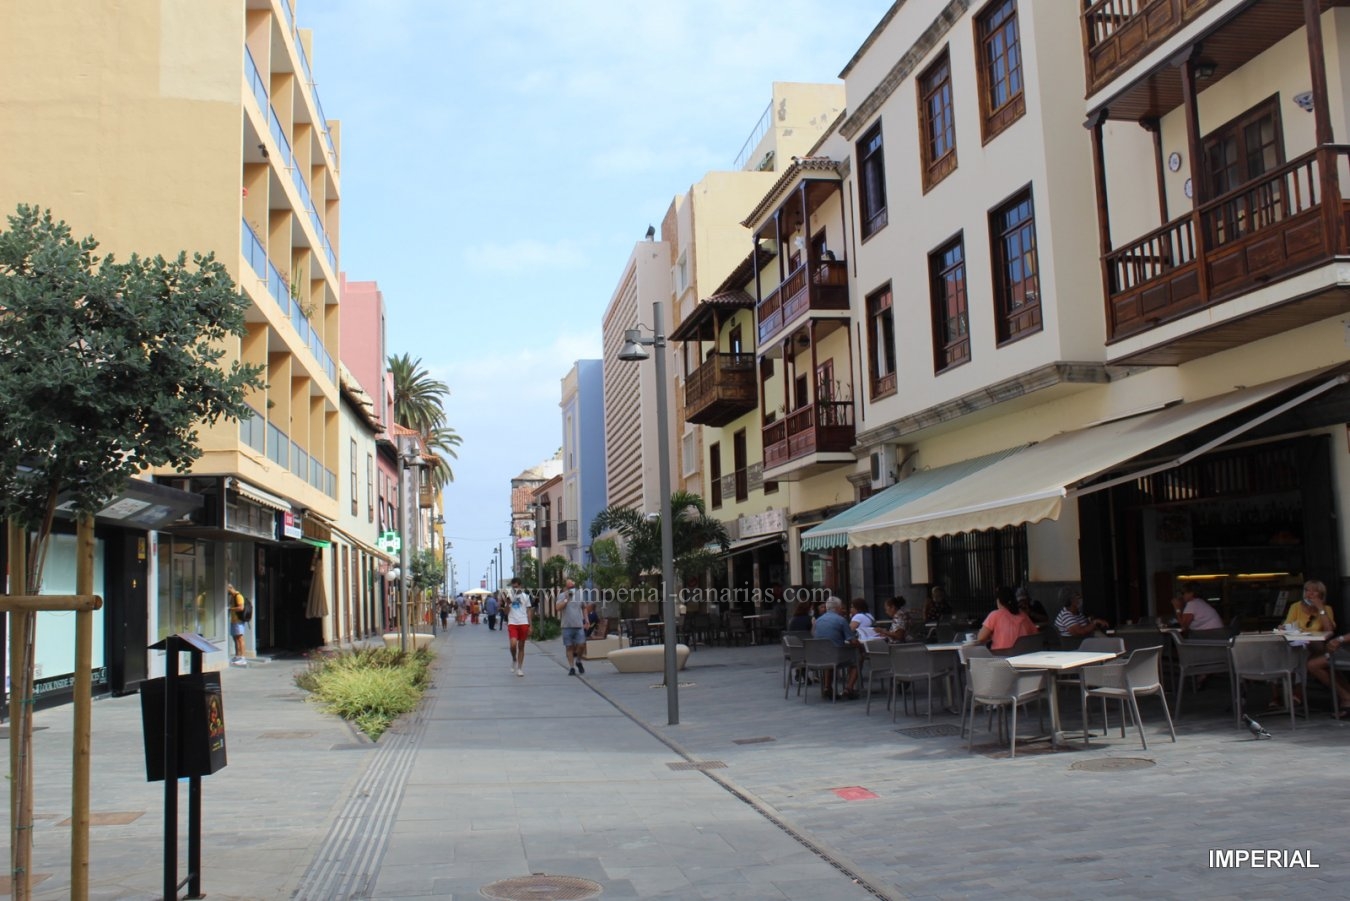  Zentral gelegene Mietwohnung  in Puerto de la Cruz, komplett möbliert und eingerichtet. 